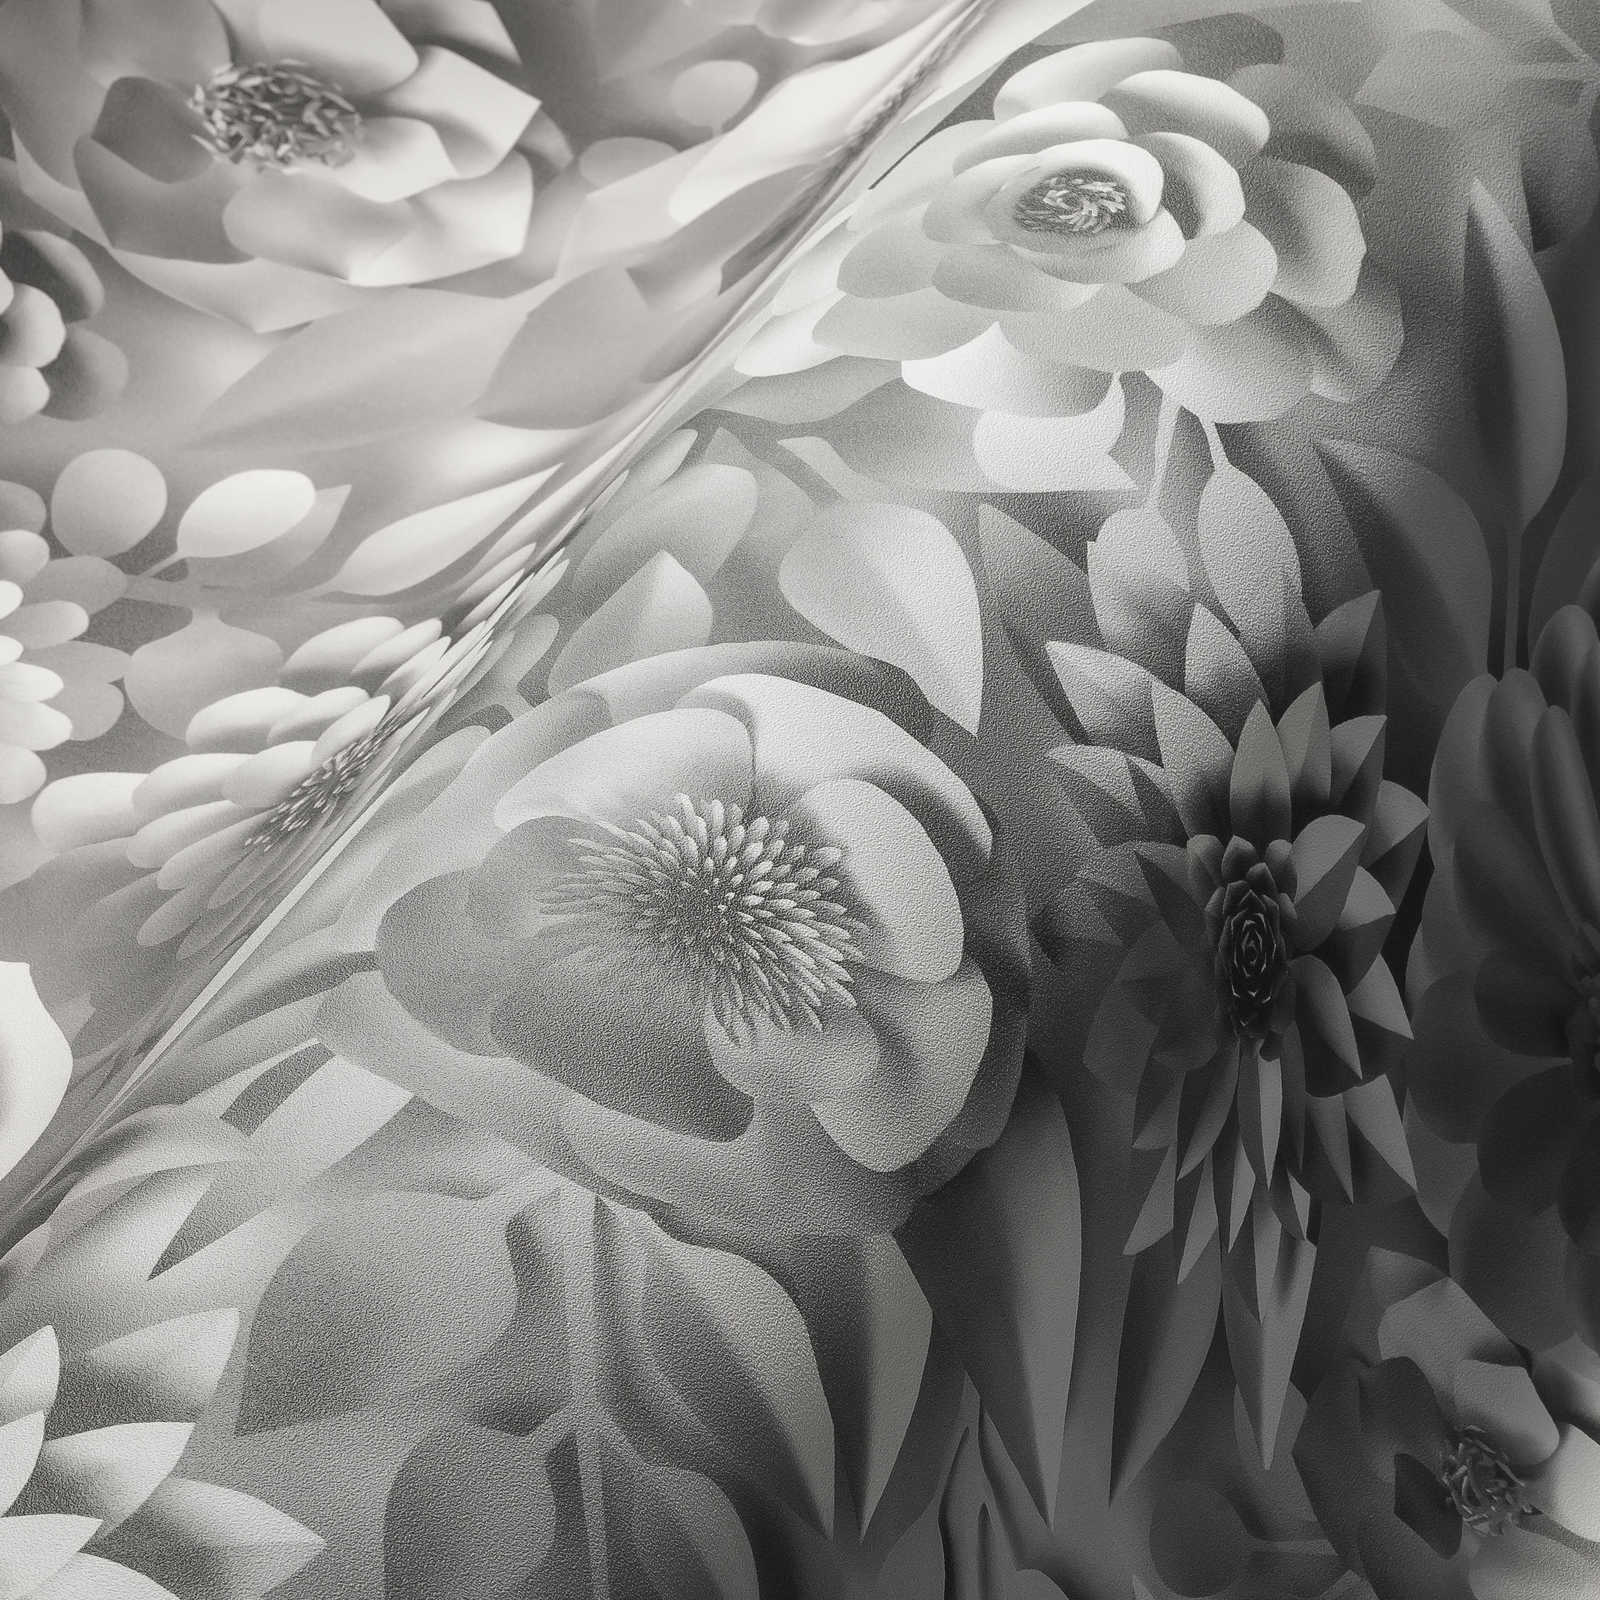             3D Tapete mit Papierblumen, Grafik Blüten-Muster – Weiß
        